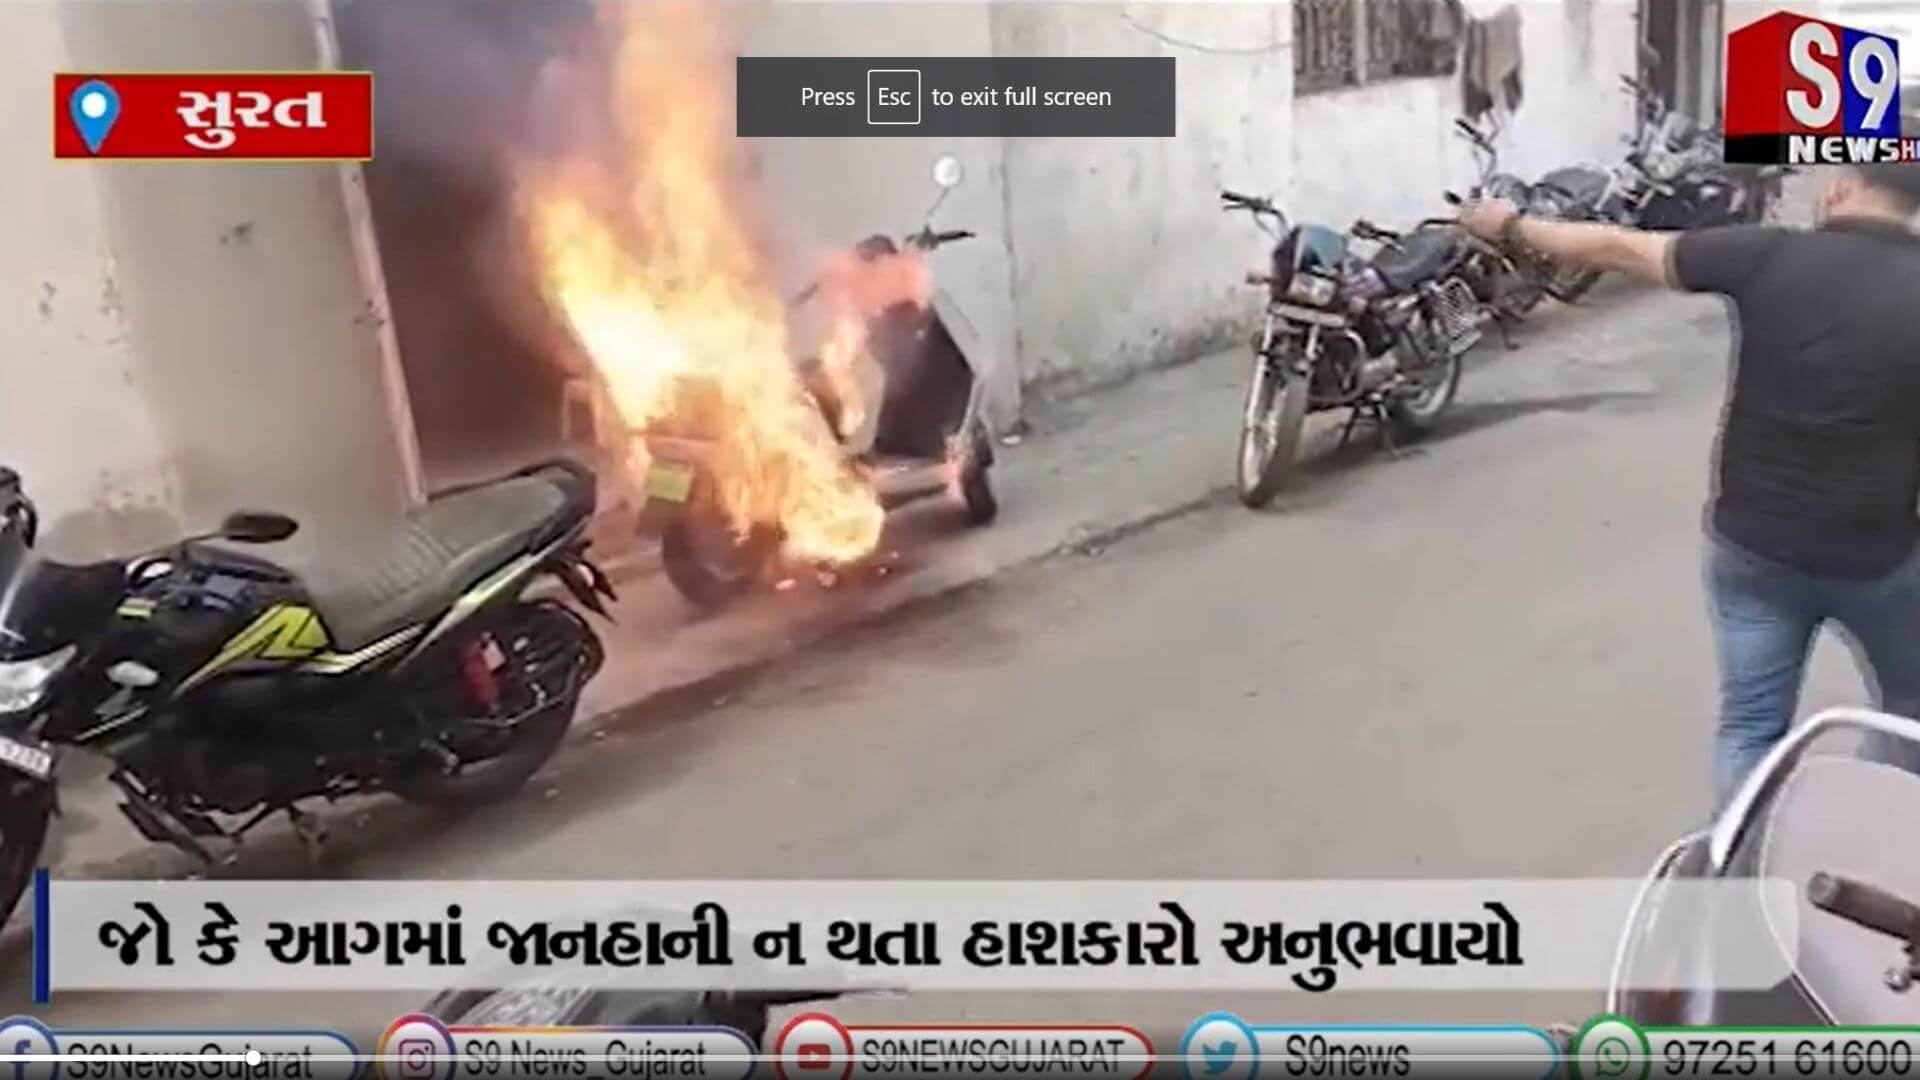 https://e-vehicleinfo.com/another-electric-scooter-from-batt-re-caught-fire-surat-gujarat/